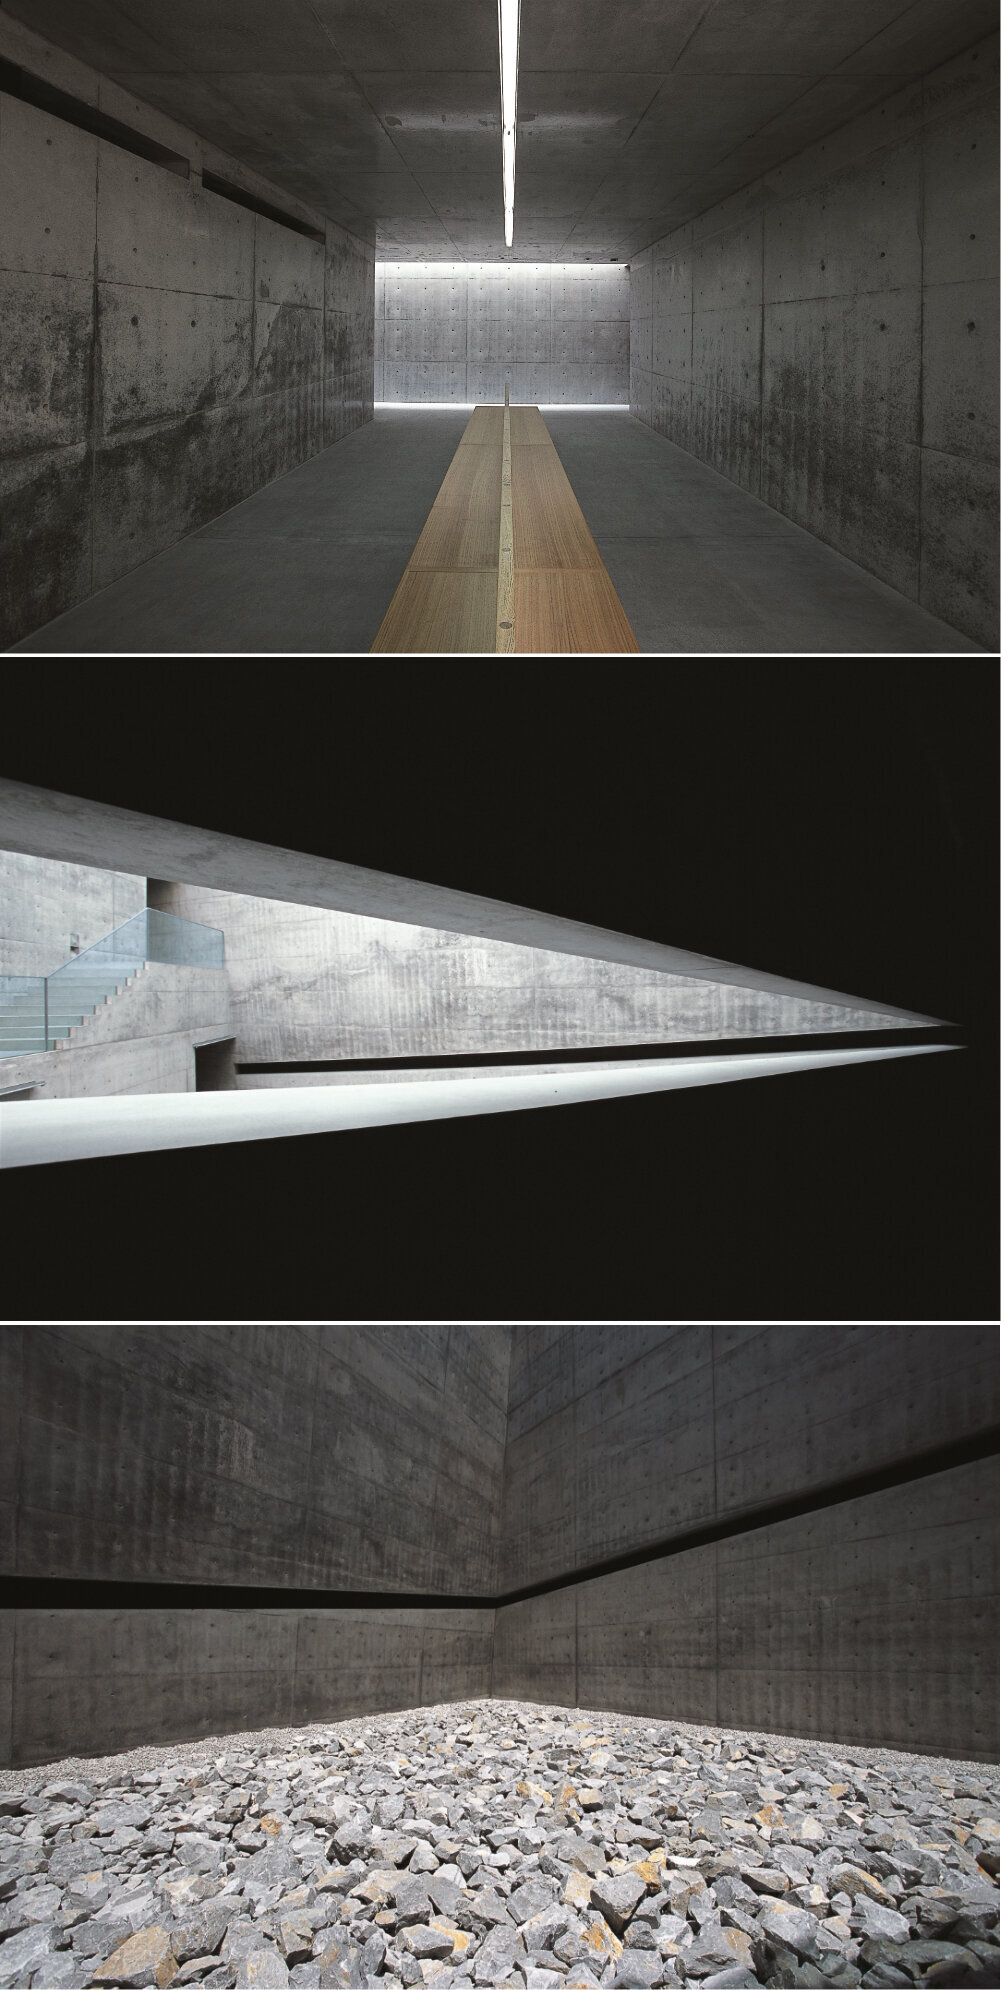 Architect Tadao Ando